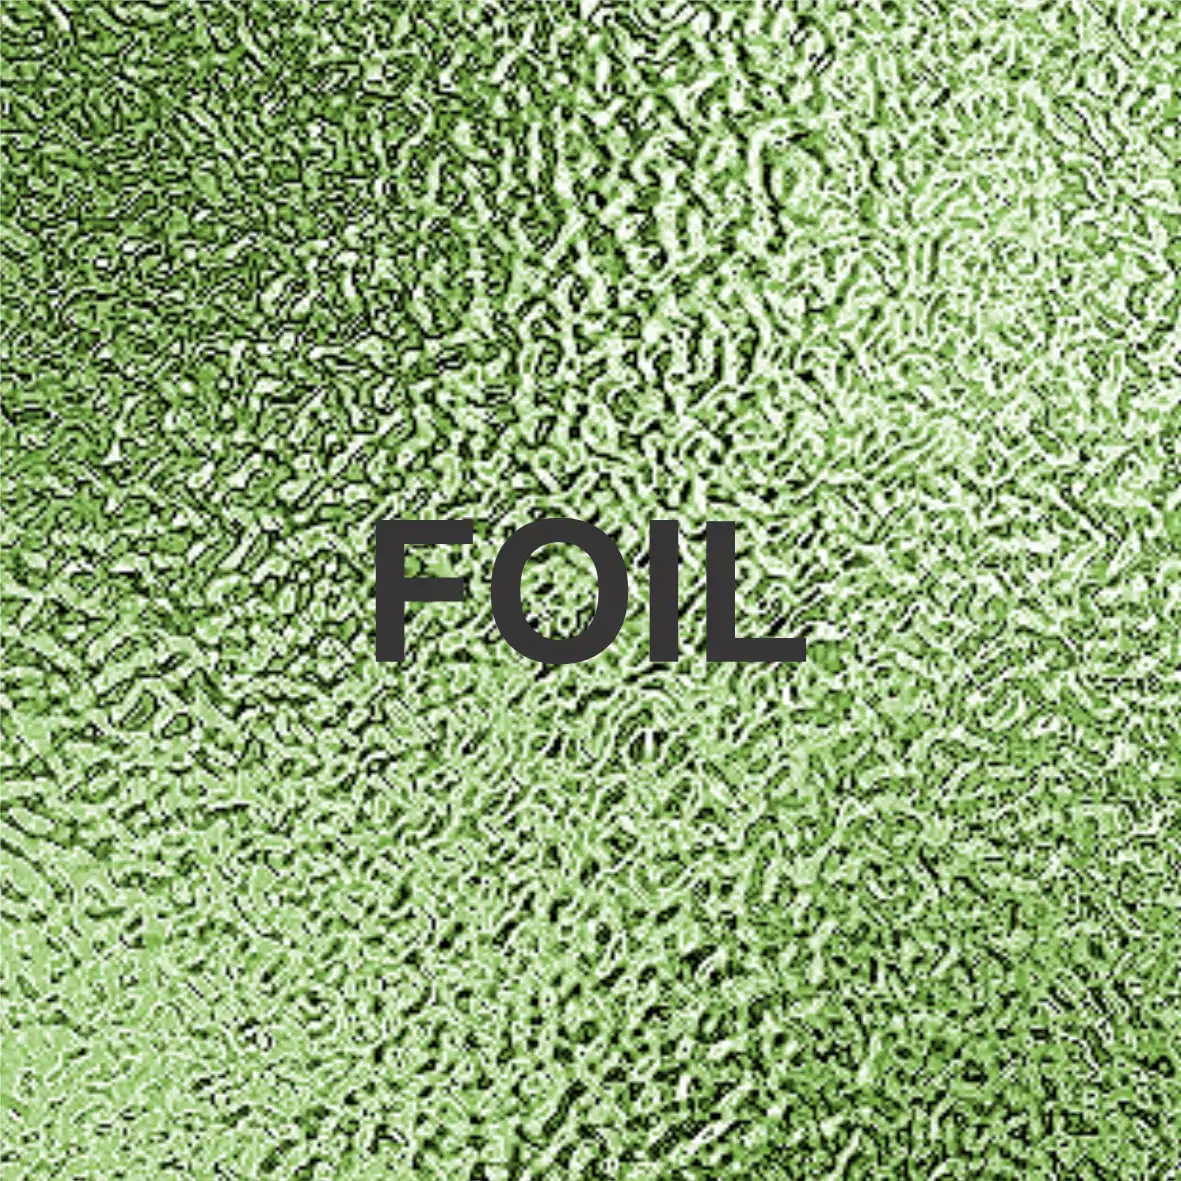 Foil